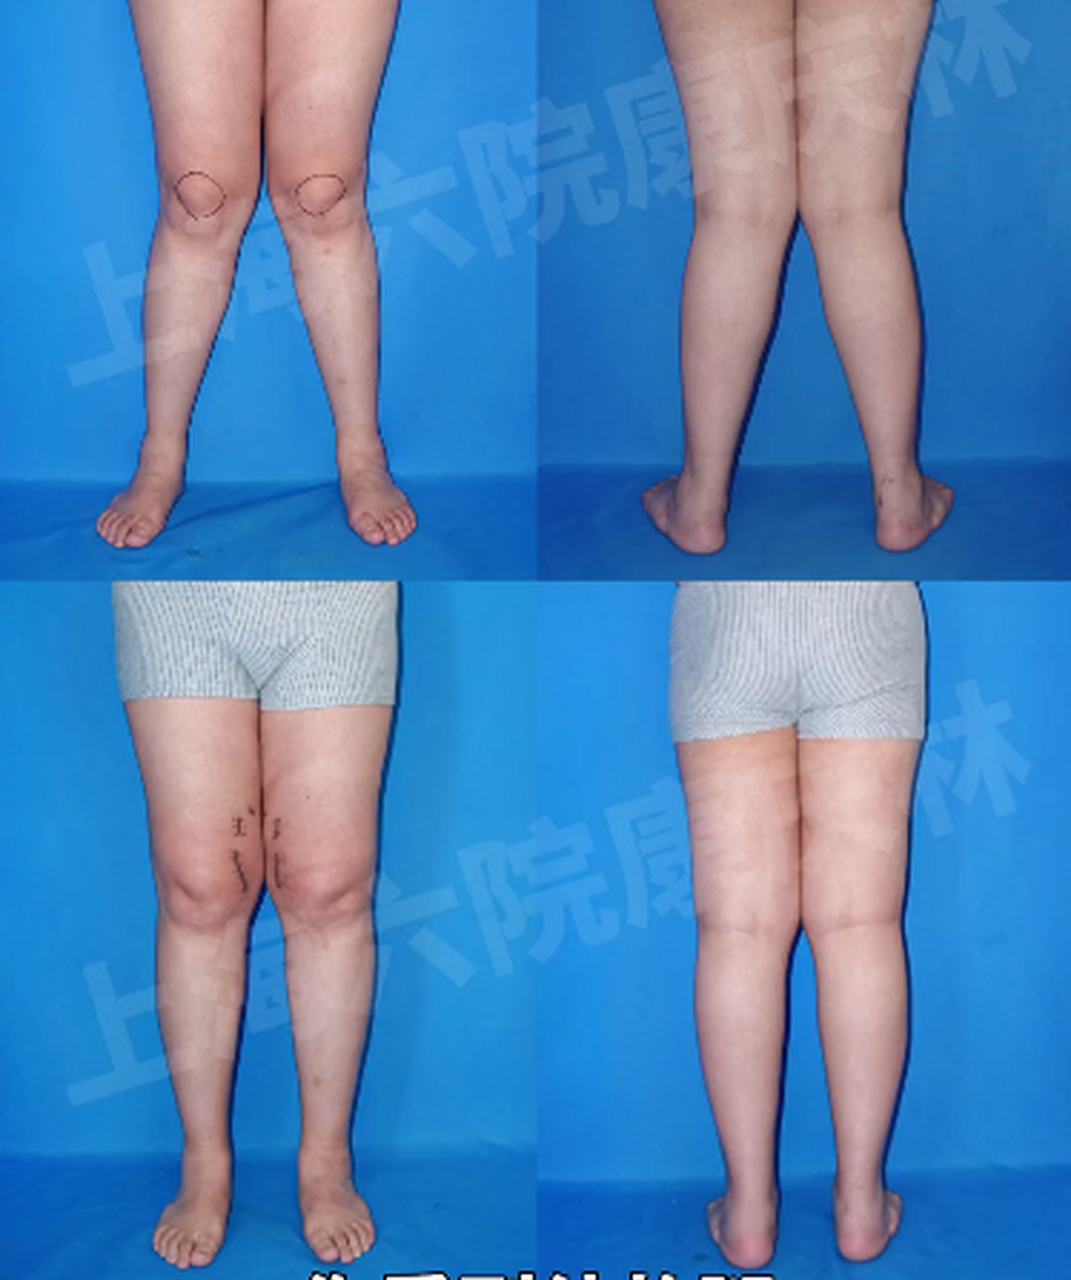 女孩有严重的x型腿,可能诱发骨性关节炎,这是矫正后的效果:  其实x型